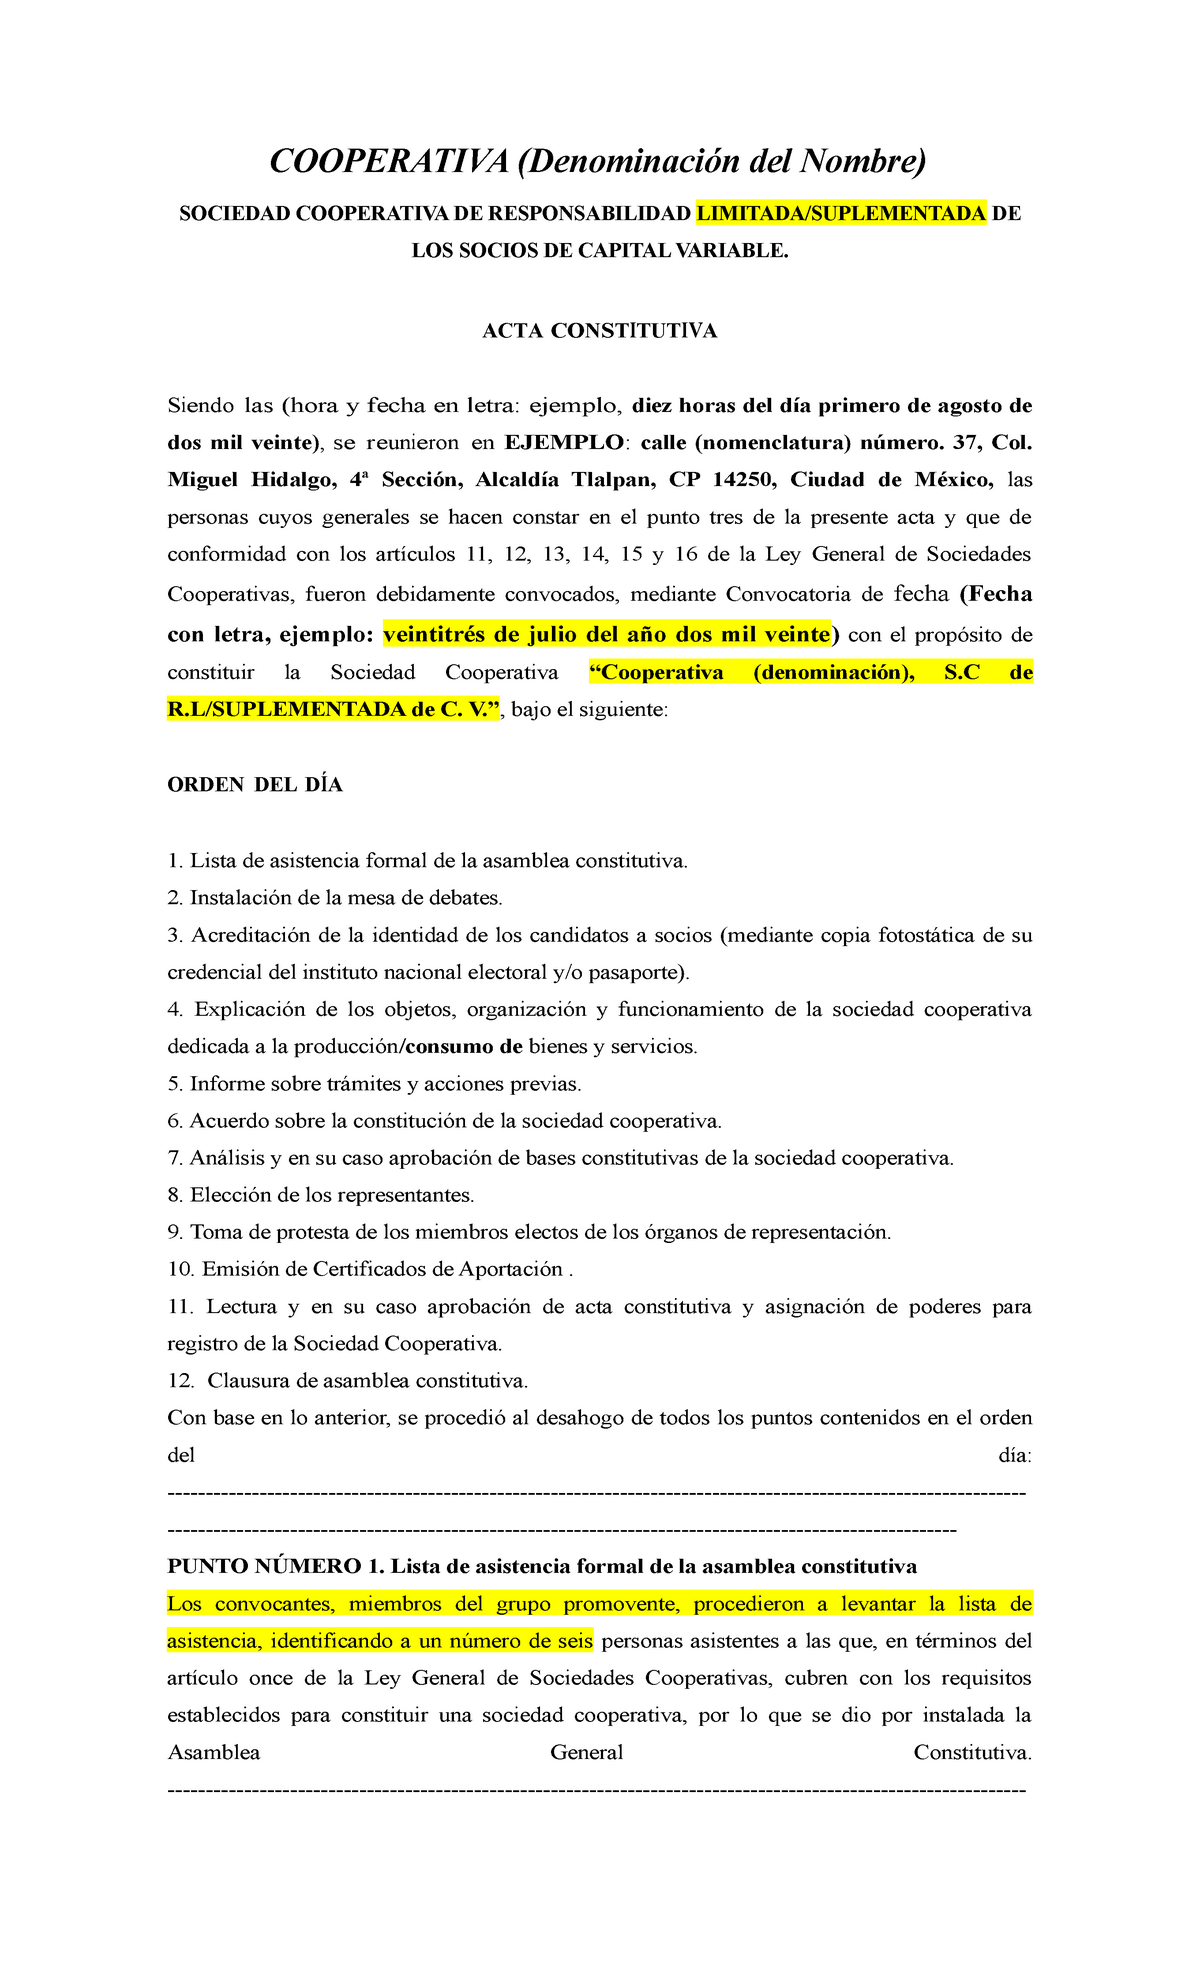 Acta Constitutiva Sociedad Cooperativa Formato - COOPERATIVA (Denominación  del Nombre) SOCIEDAD - Studocu